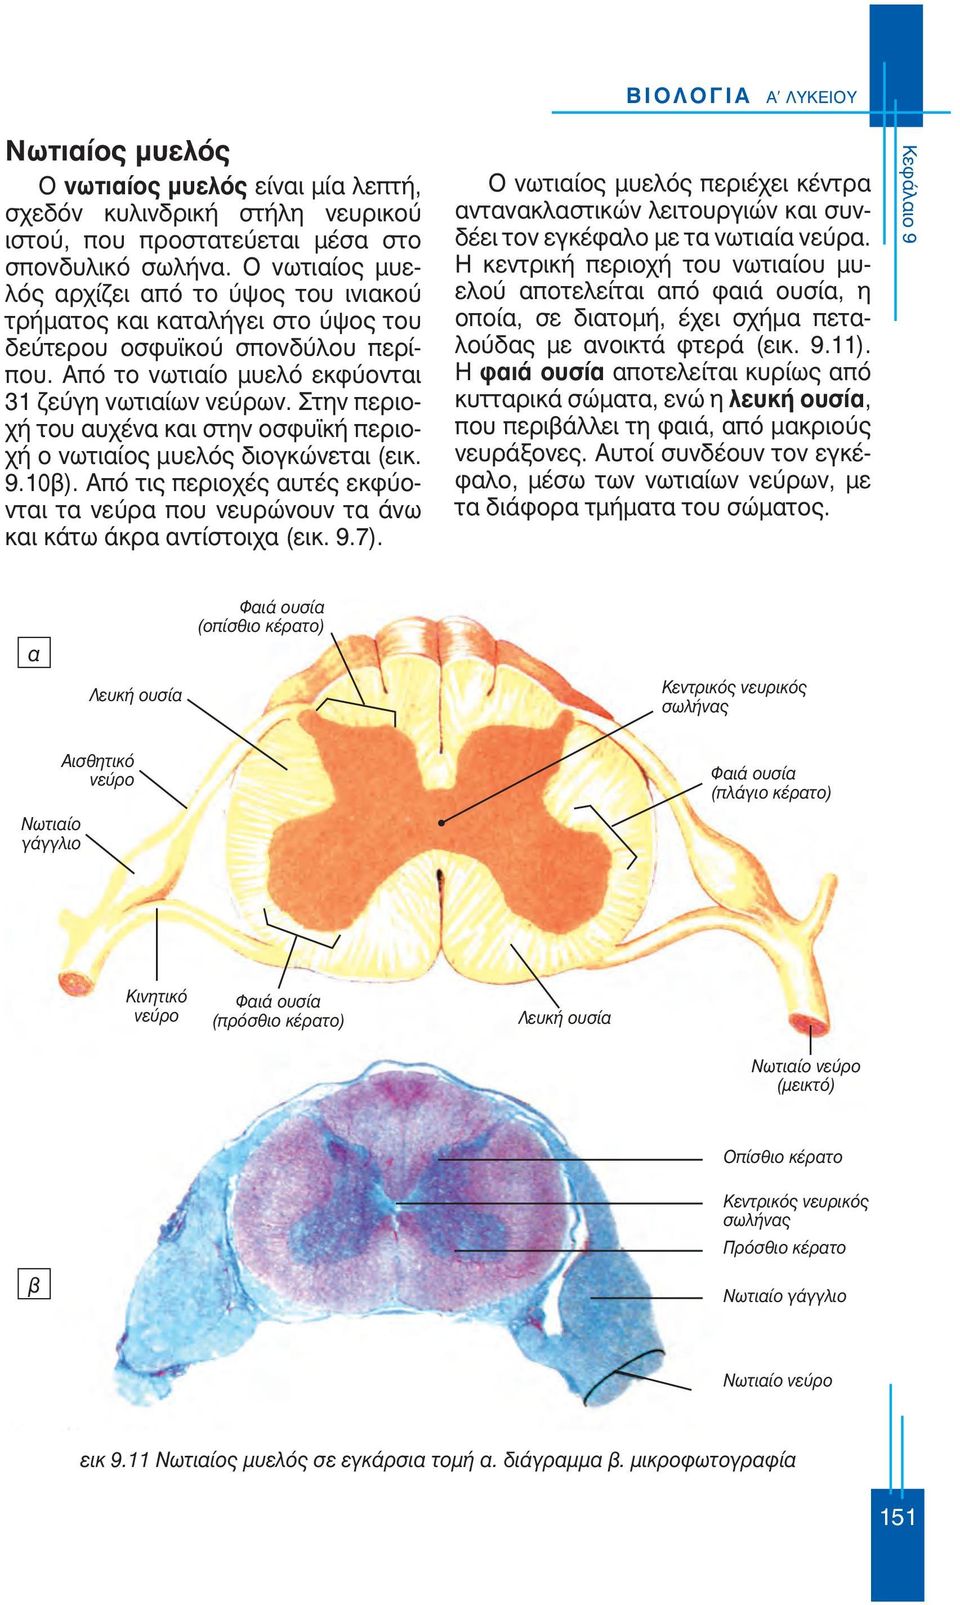 Στην περιοχή του αυχένα και στην οσφυϊκή περιοχή ο νωτιαίος μυελός διογκώνεται (εικ. 9.10β). Από τις περιοχές αυτές εκφύονται τα νεύρα που νευρώνουν τα άνω και κάτω άκρα αντίστοιχα (εικ. 9.7).